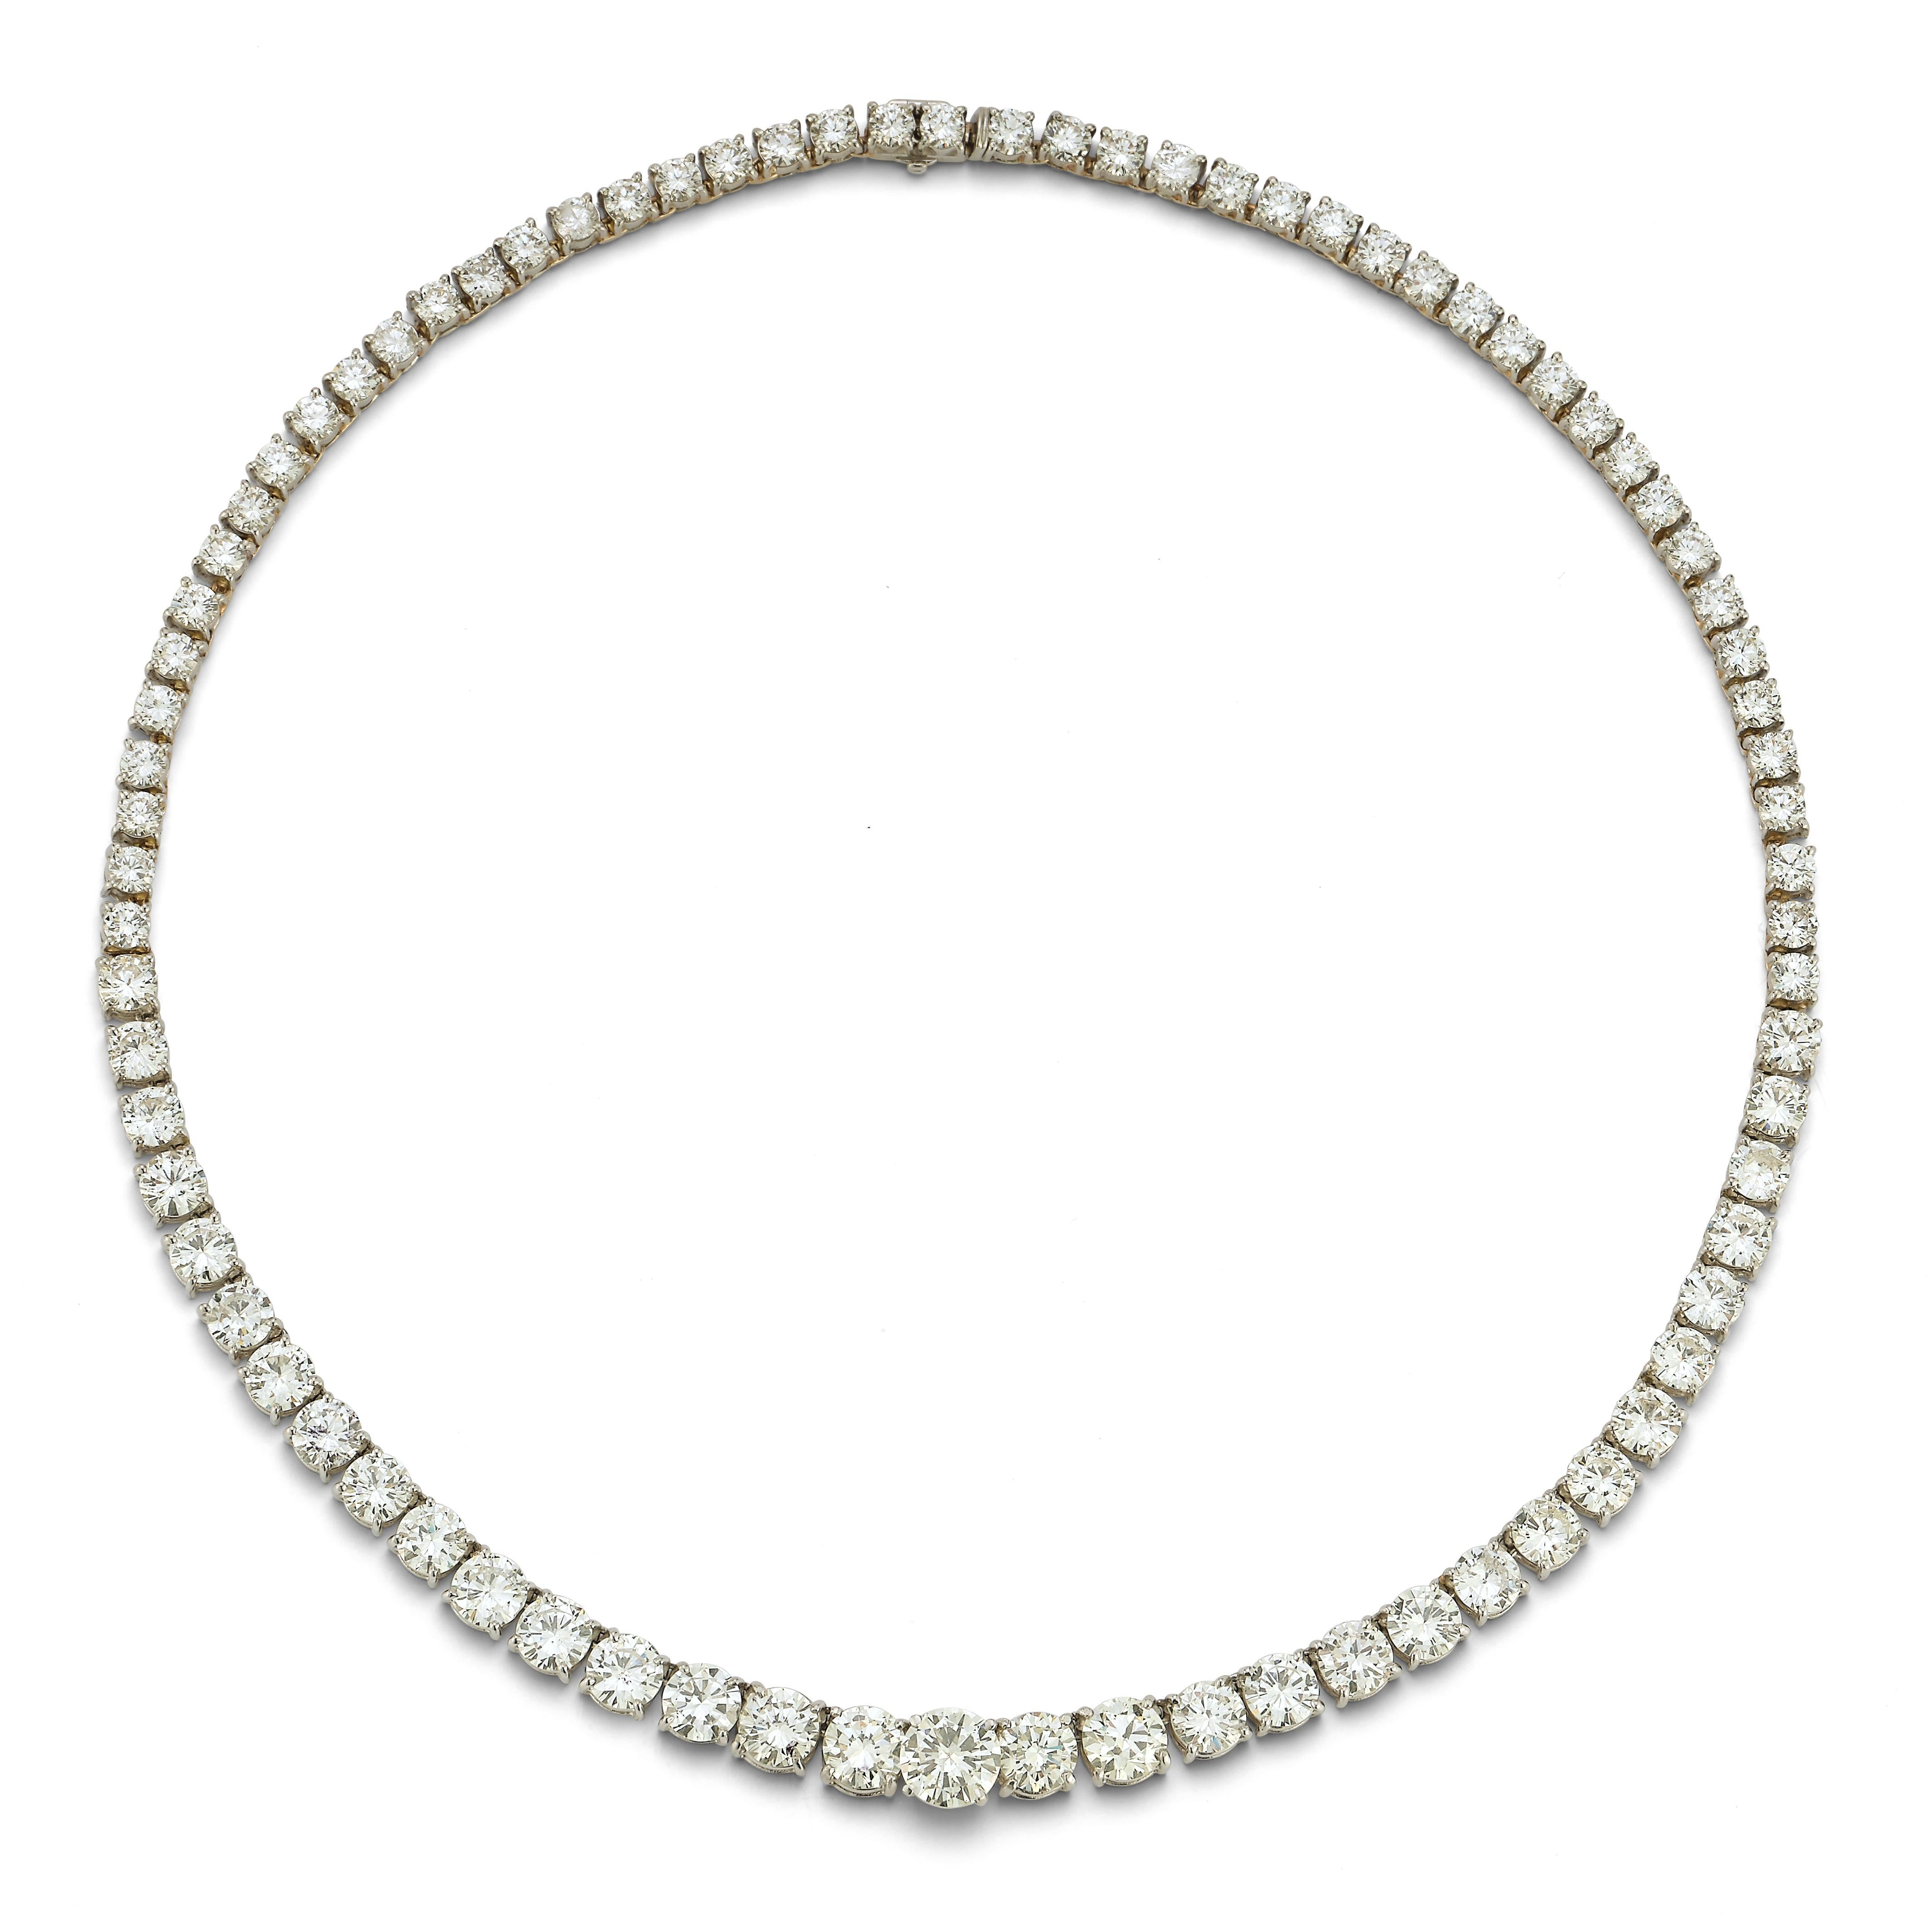 Graduated Diamond Rivière Necklace, eine Reihe von 75 graduierten Diamanten mit rundem Schliff von insgesamt ca. 26,00 Karat, einschließlich eines zentralen Diamanten von ca. 2,00 Karat, gefasst in Platin. Die Qualität aller Steine liegt bei J/K/L